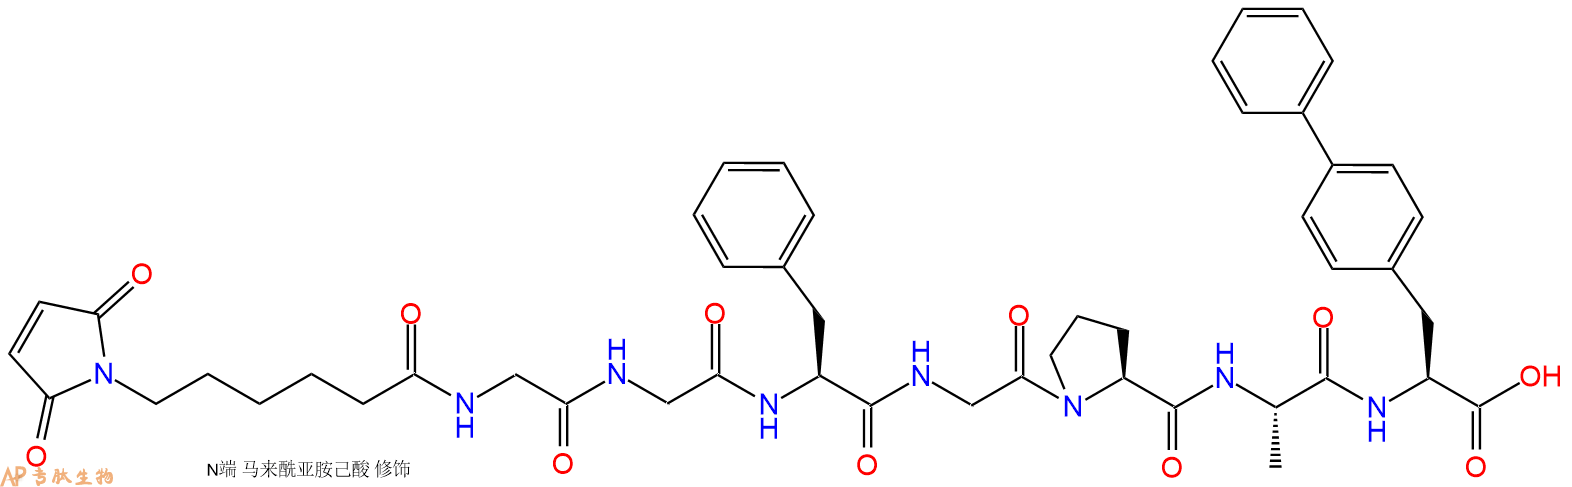 专肽生物产品6Mal-Gly-Gly-Phe-Gly-Pro-Ala-Bip-COOH